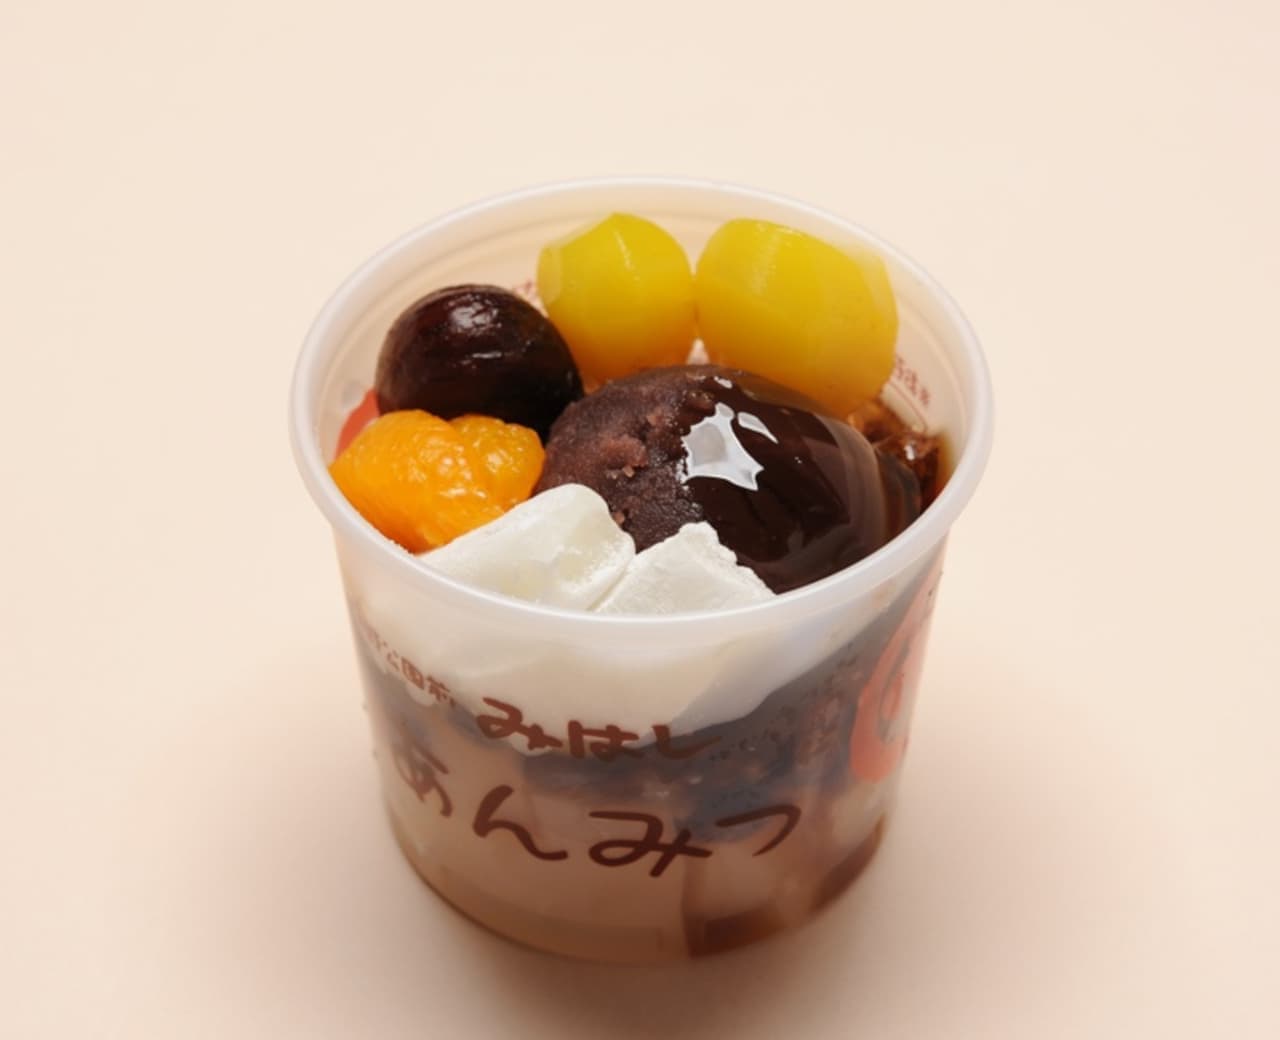 Anmitsu Mihashi "ice hojicha", "hojicha anmitsu", "aisu monaka (hojicha)", "chestnut anmitsu", "chestnut cream anmitsu